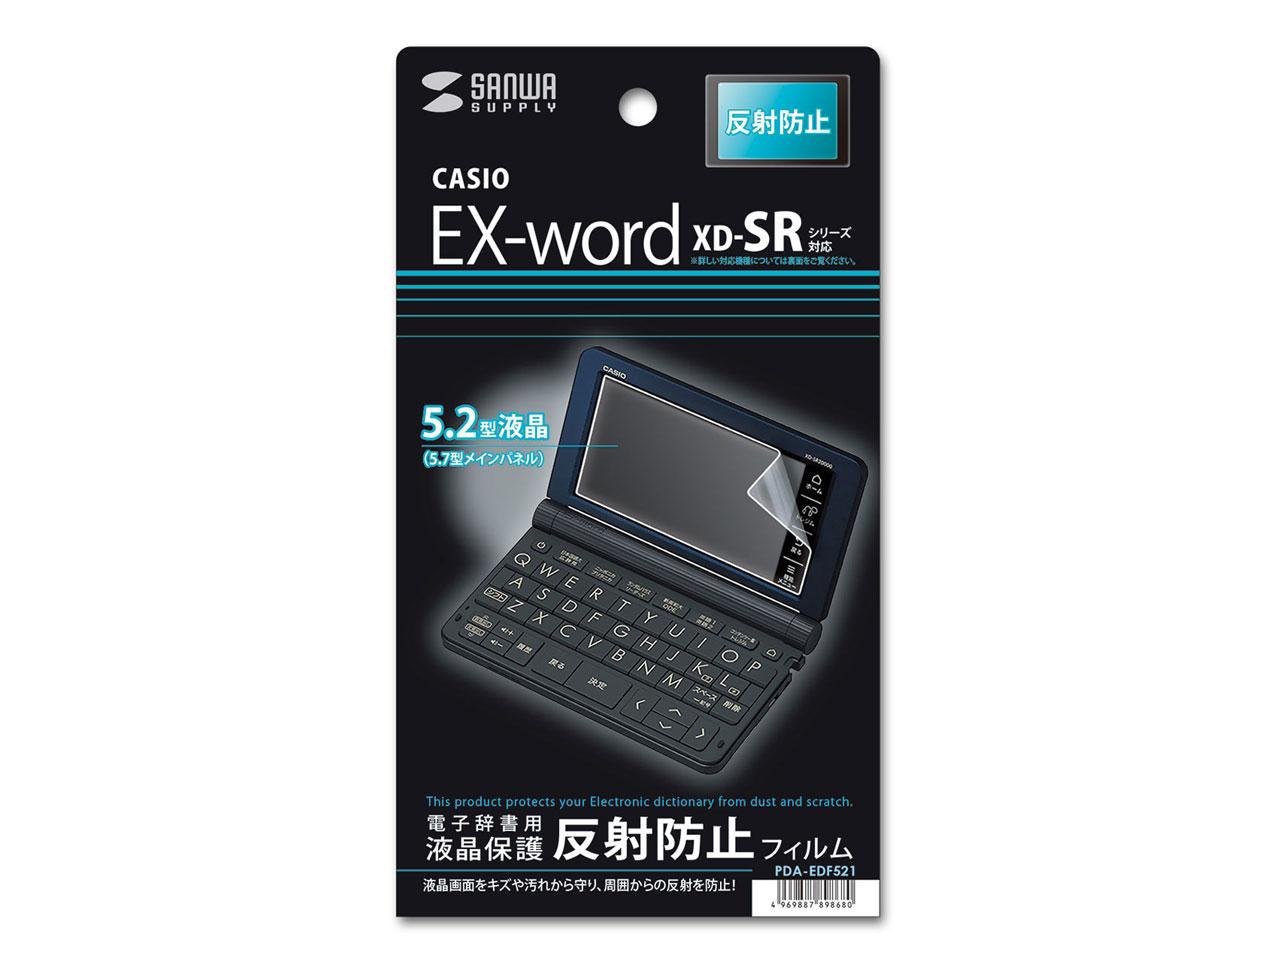  CASIO EX-word XD-SRV[Yptی씽˖h~tB@PDA-EDF521